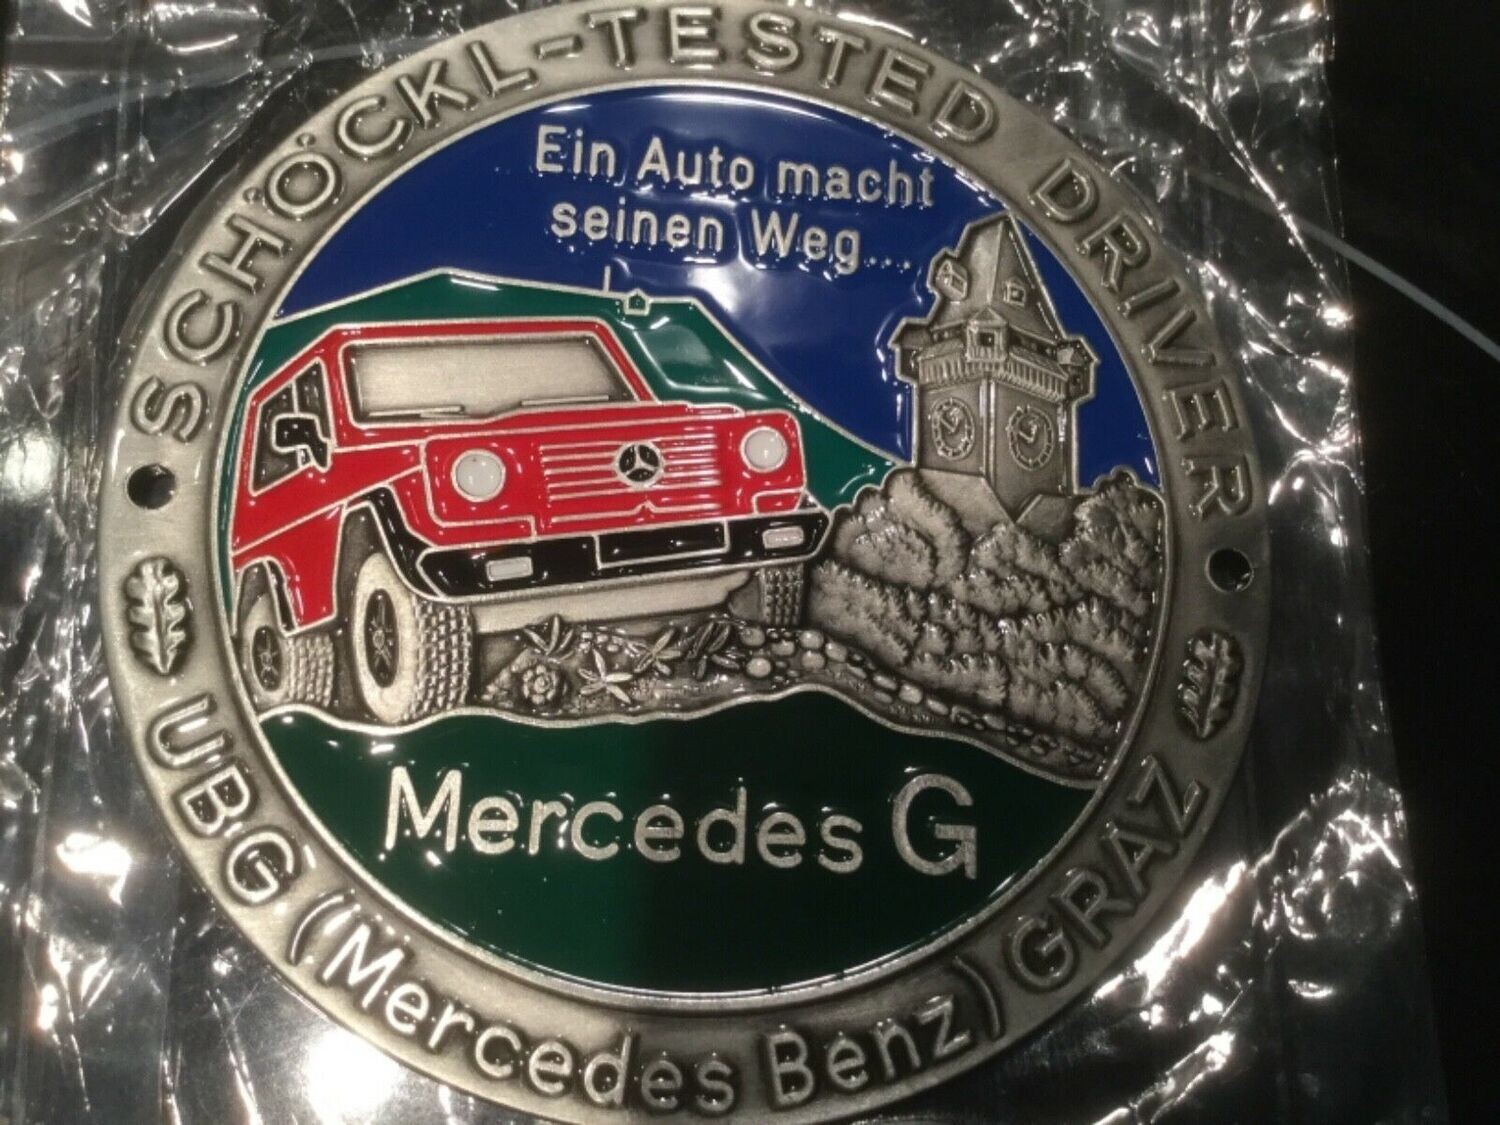 ///**G Klasse Mercedes G Modell Emblem Abzeichen Plakette G-Klasse Schöckl Tested Diver Silber